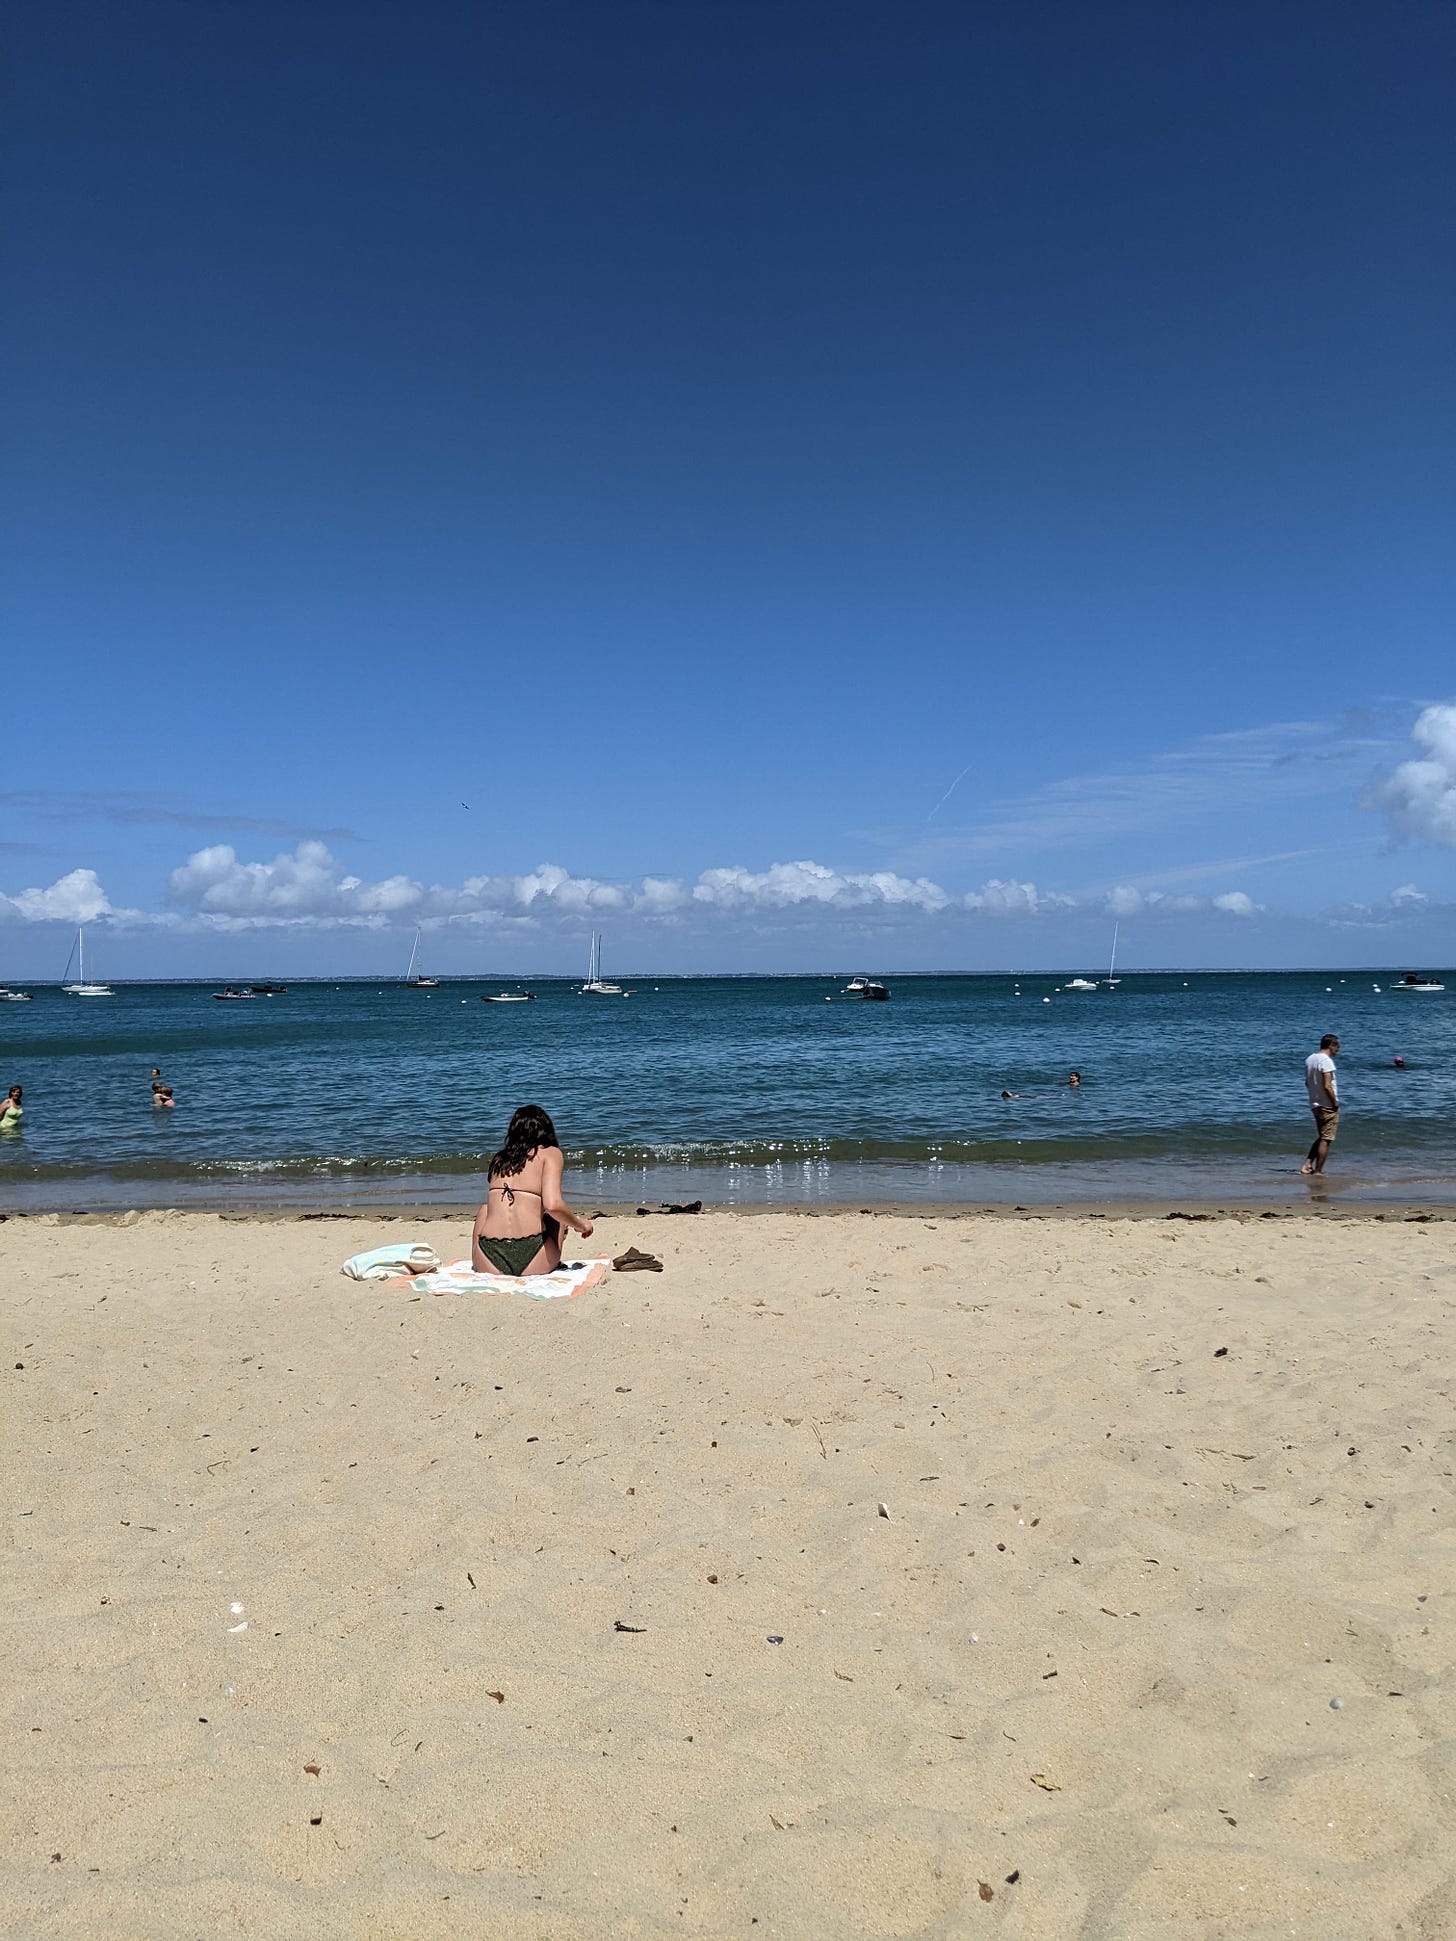 Beach in Noirmoutier-en-île in the Vendée region of France